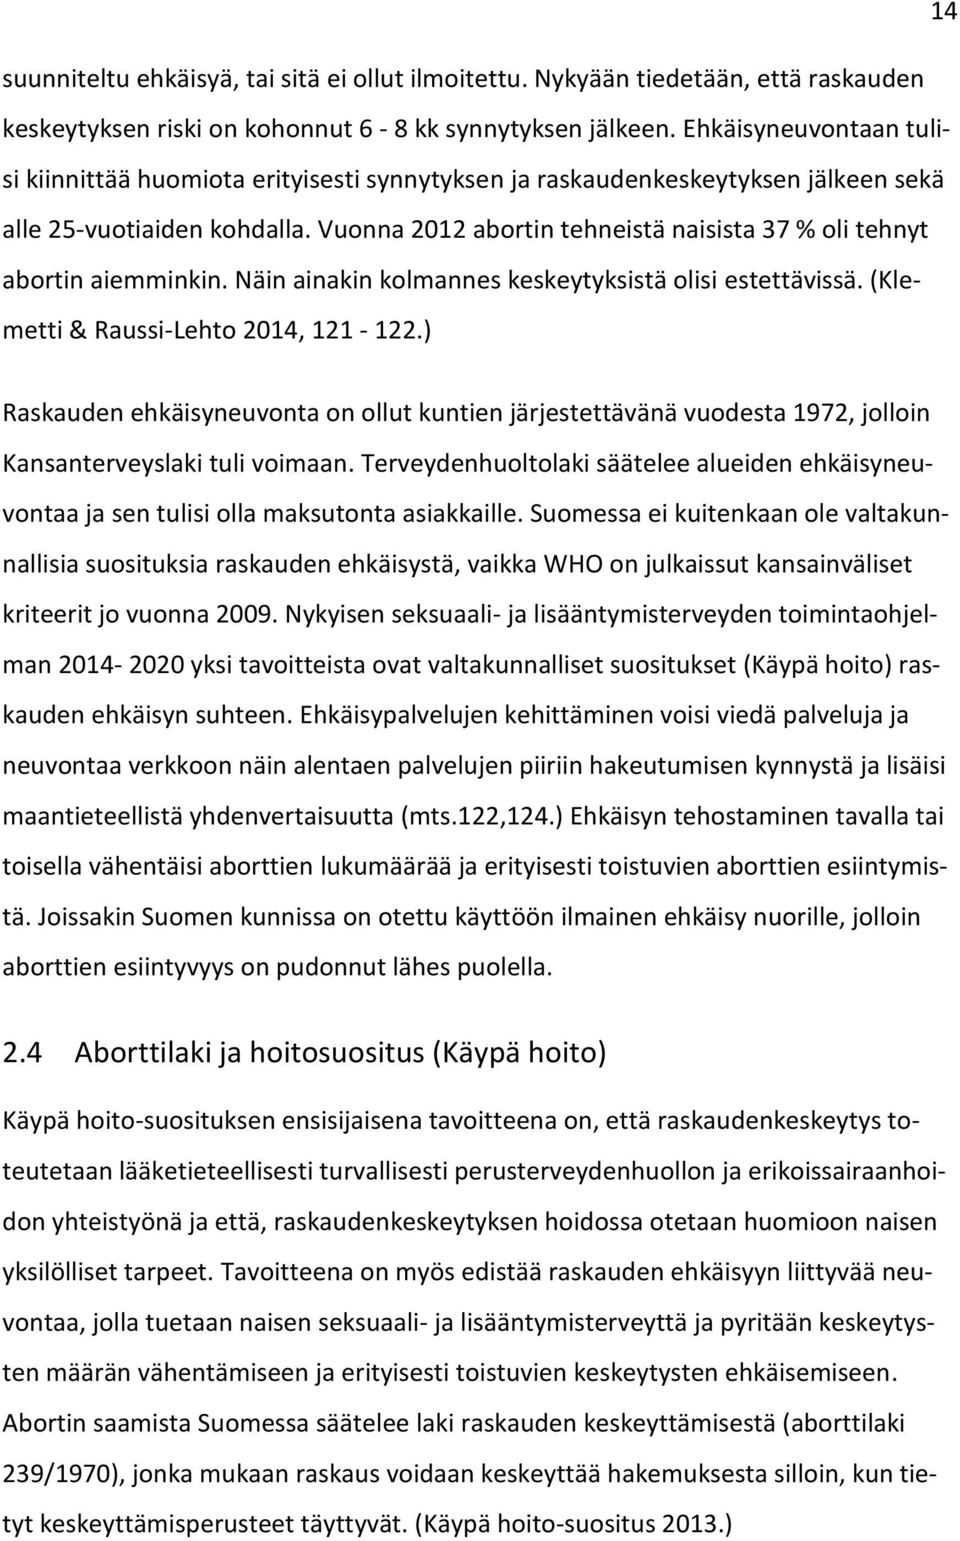 Vuonna 2012 abortin tehneistä naisista 37 % oli tehnyt abortin aiemminkin. Näin ainakin kolmannes keskeytyksistä olisi estettävissä. (Klemetti & Raussi-Lehto 2014, 121-122.